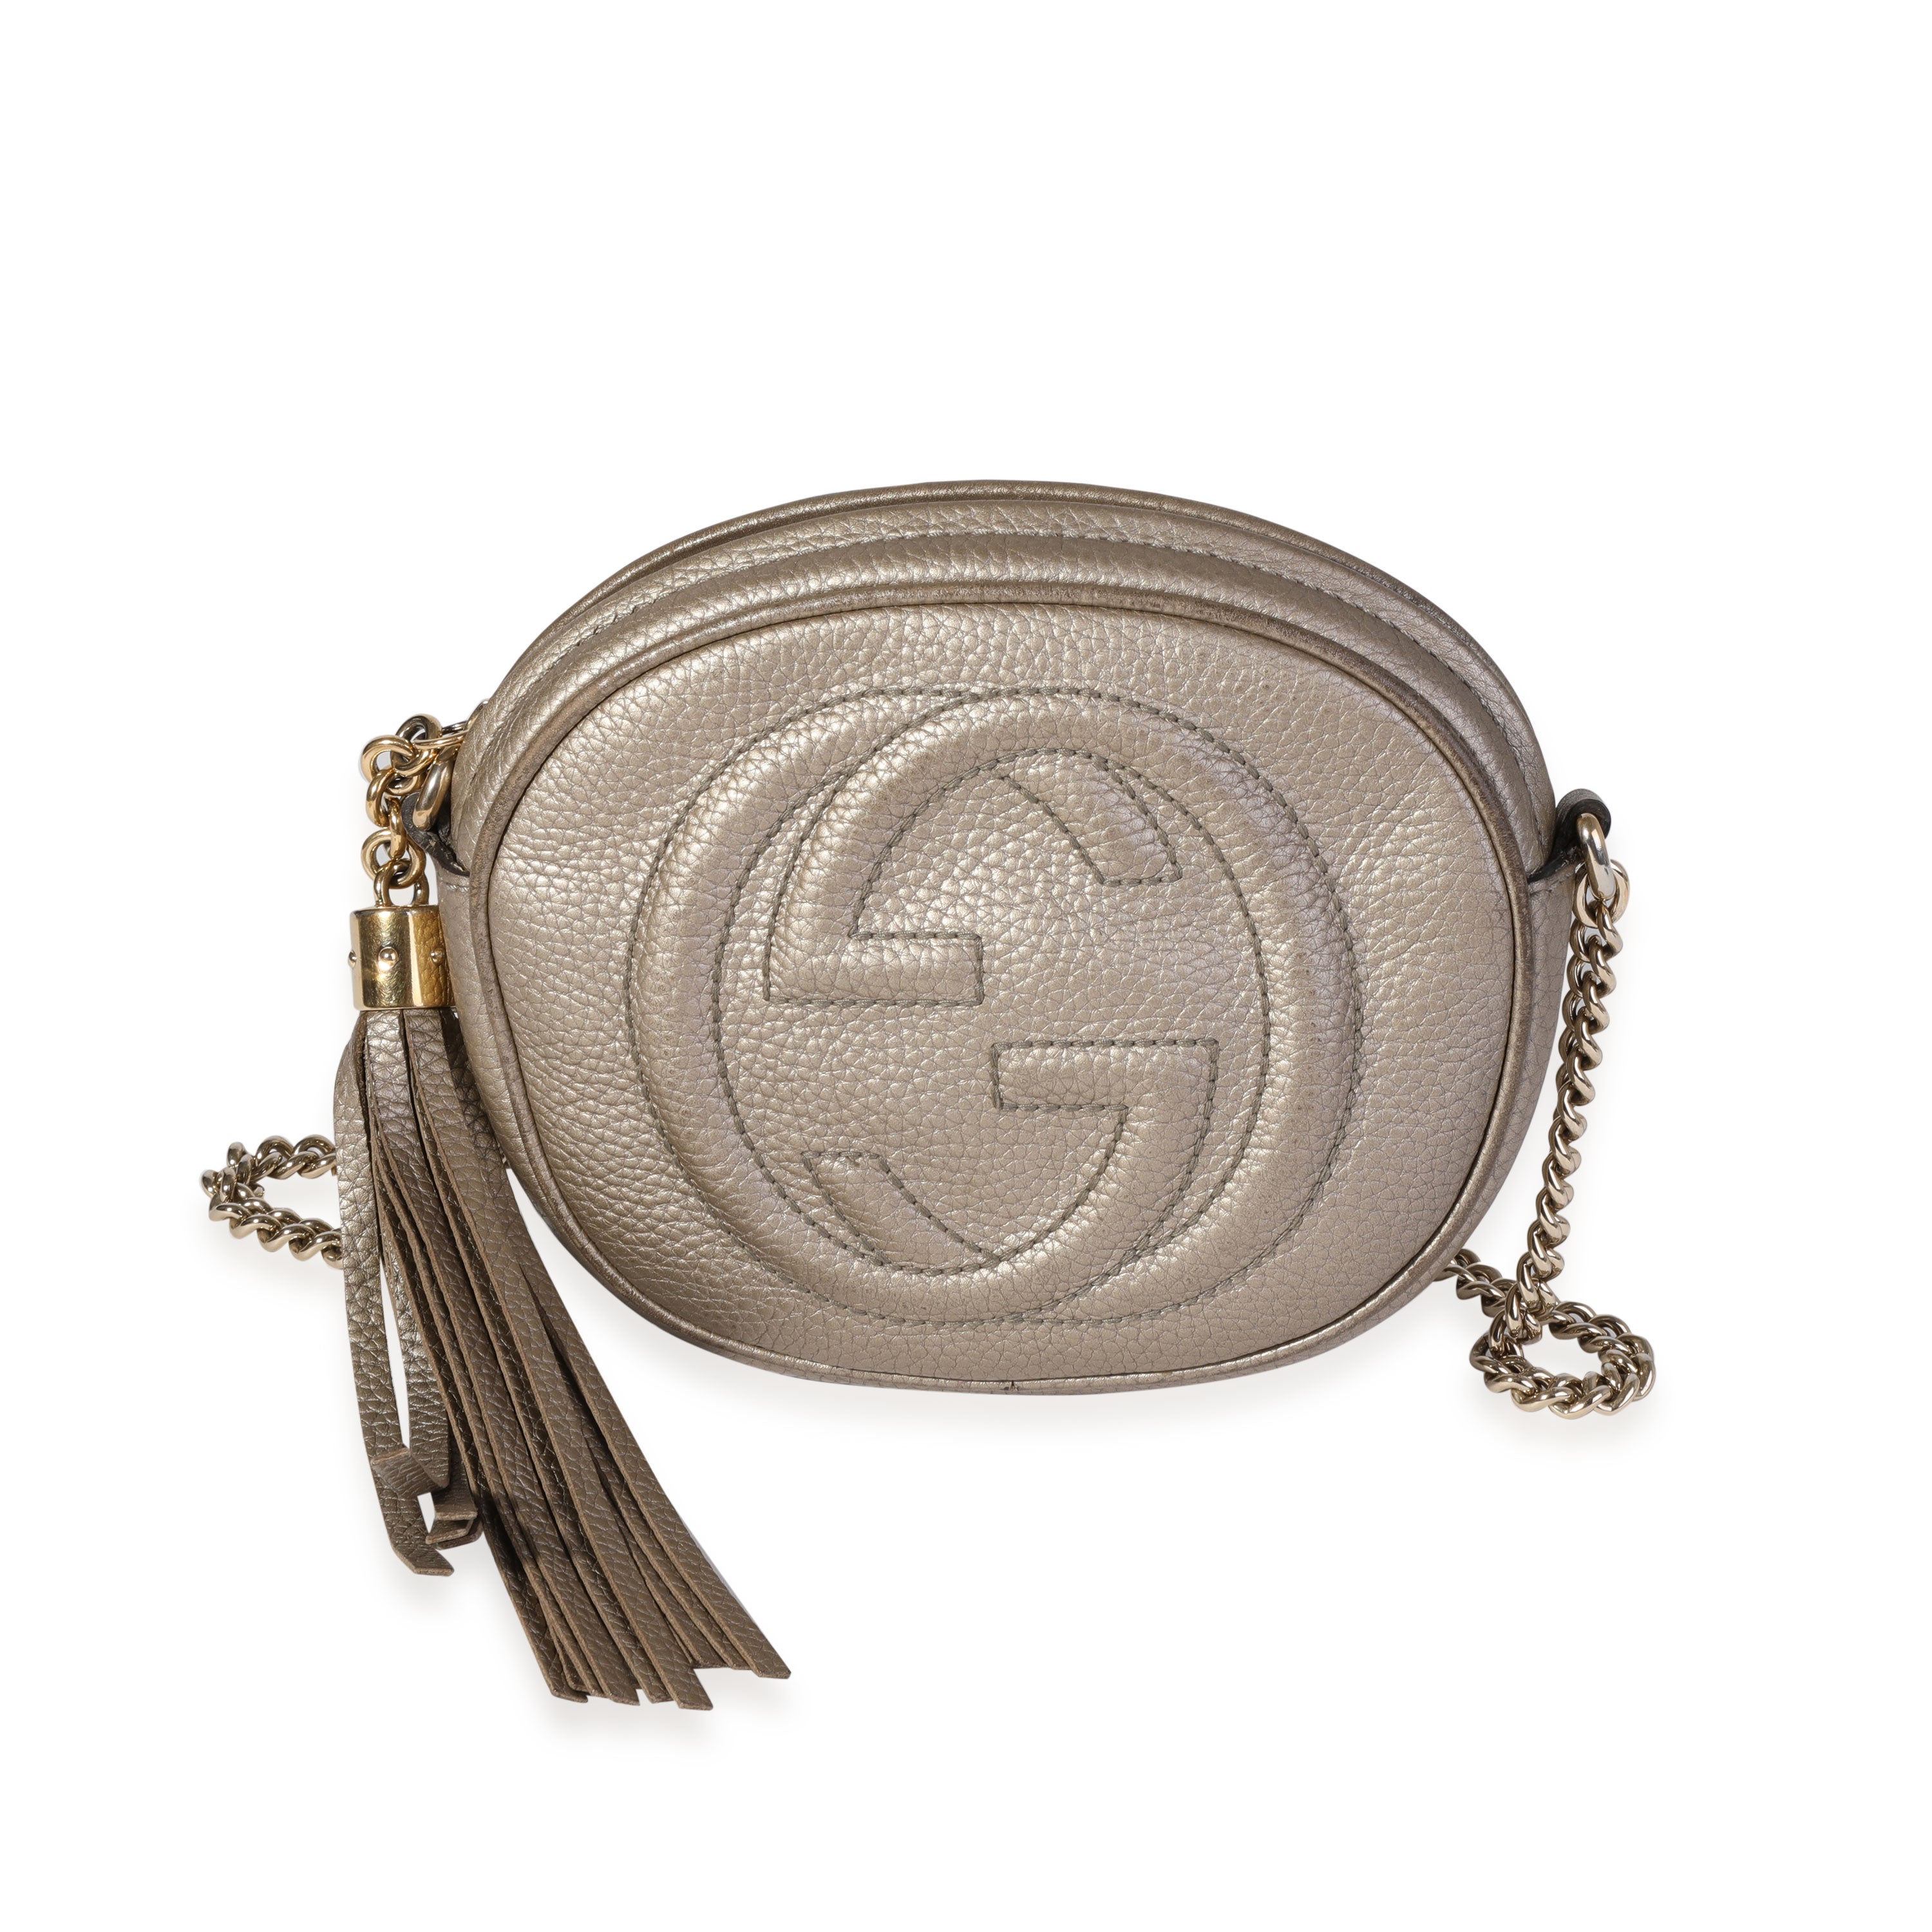 Gucci Gold Metallic Small Soho Shoulder Bag